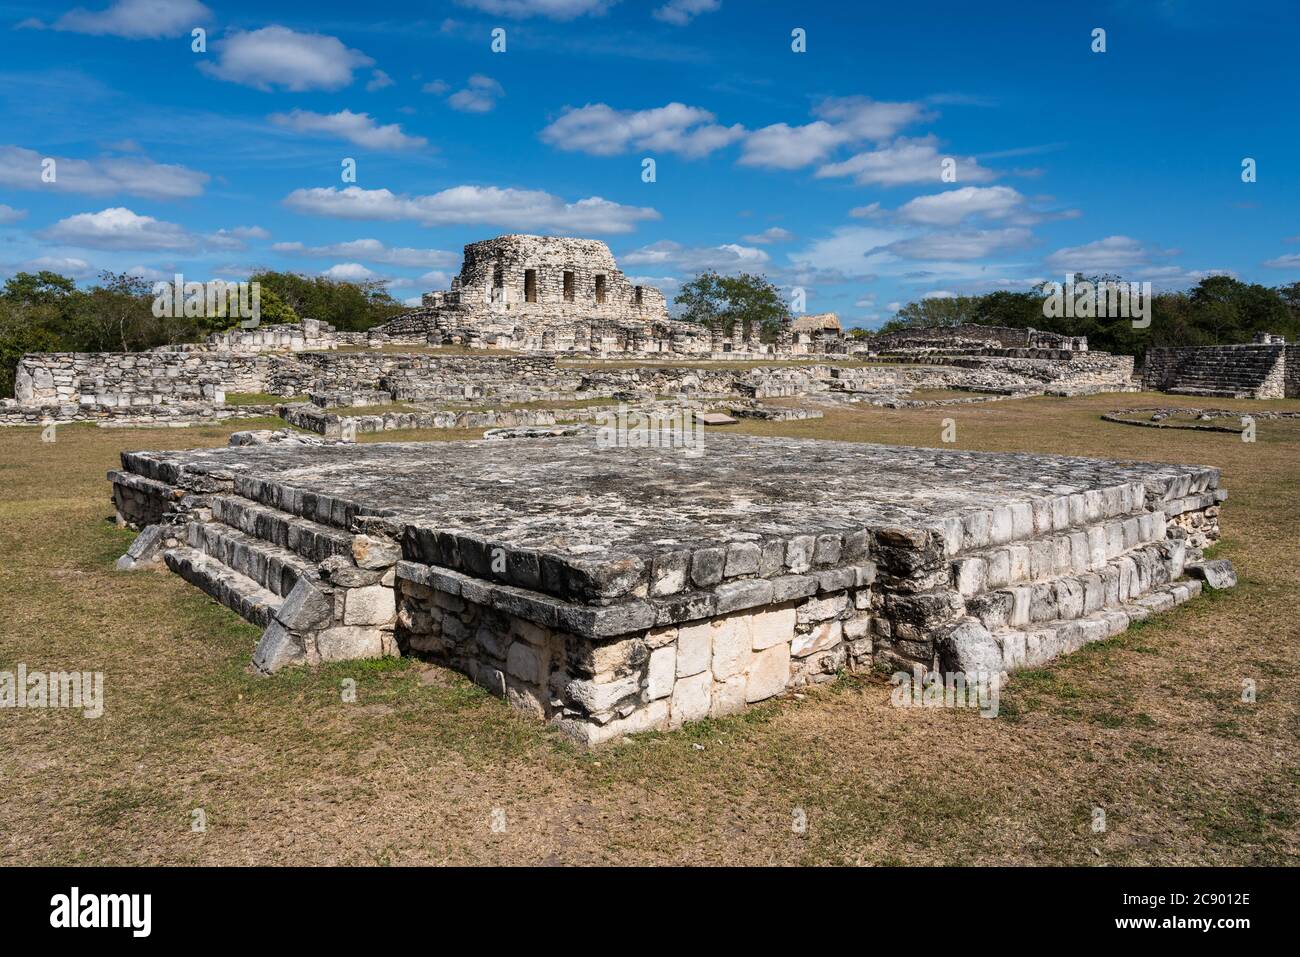 Una piattaforma cerimoniale e il Tempio delle nicchie dipinte nelle rovine della città Maya post-classica di Mayapan, Yucatan, Messico. Foto Stock